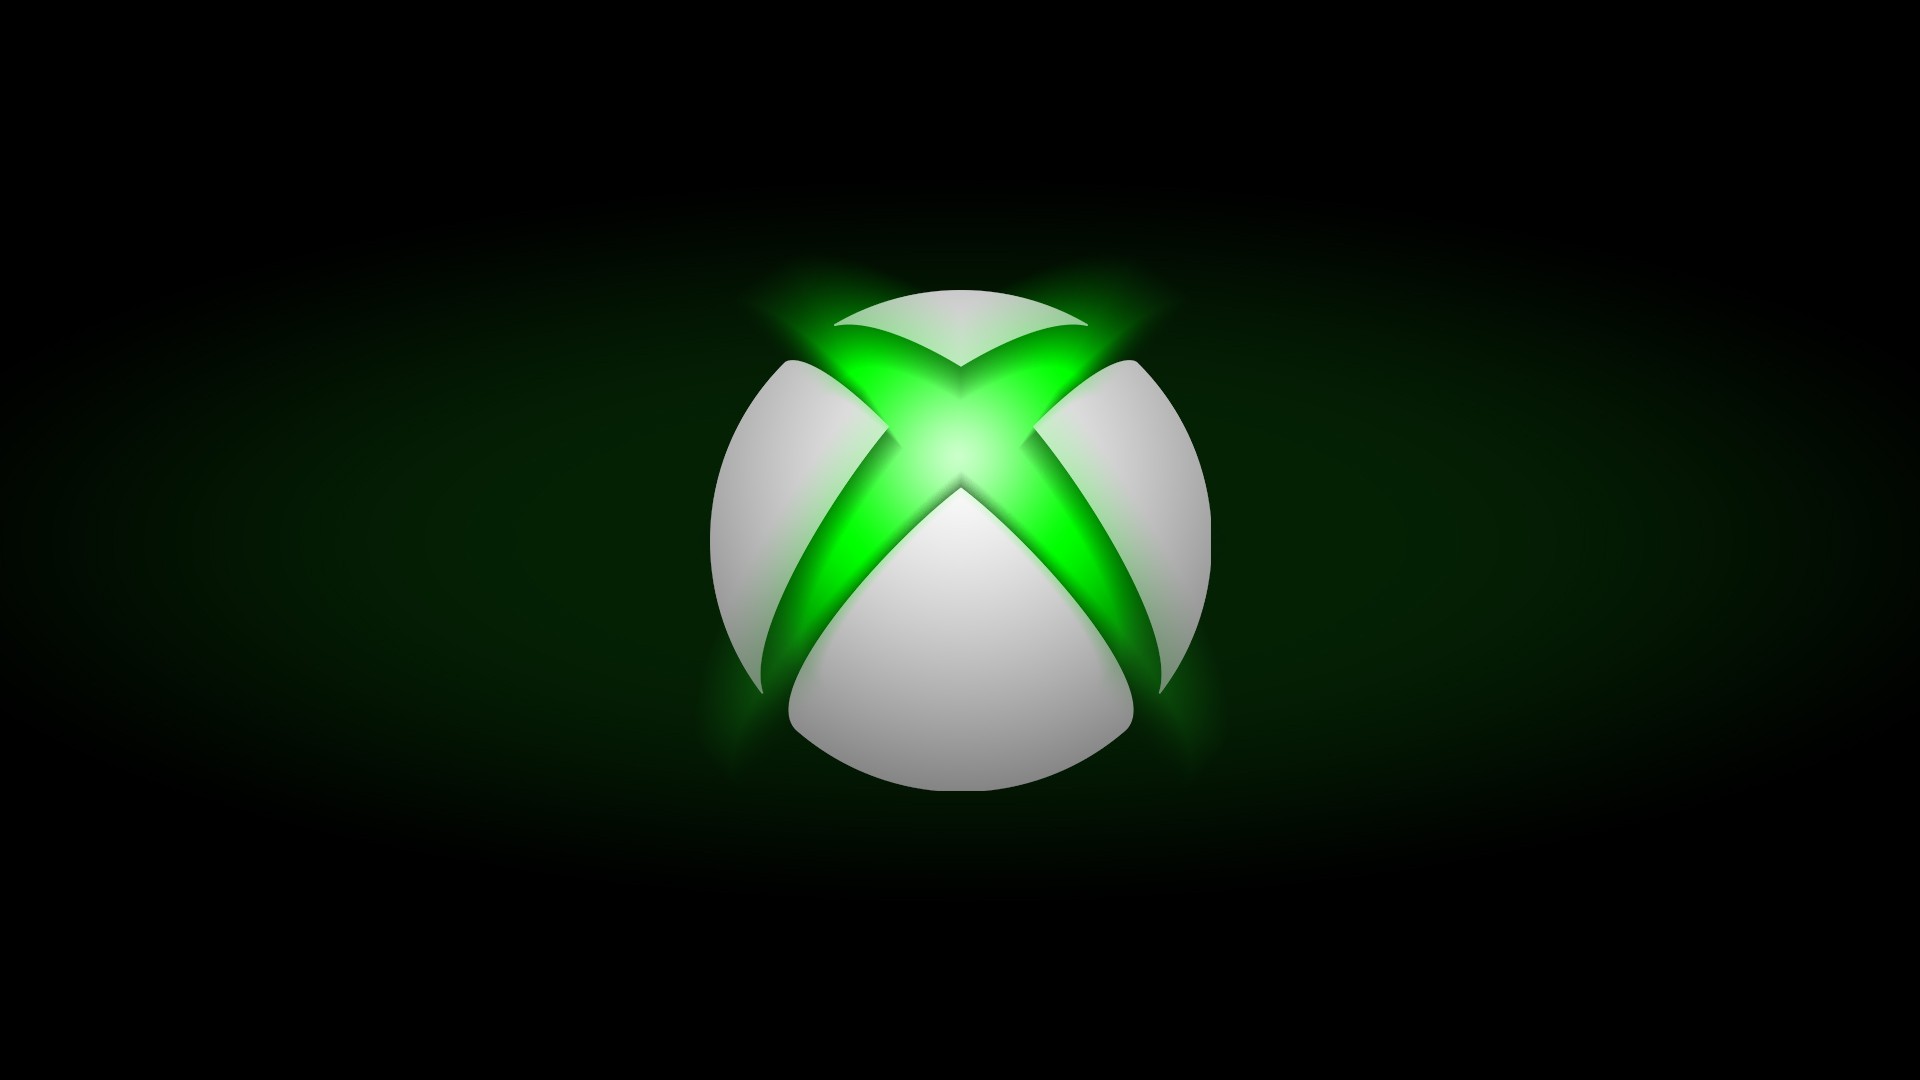 Vaza a primeira lista de jogos do Xbox Original compatíveis com o Xbox One  